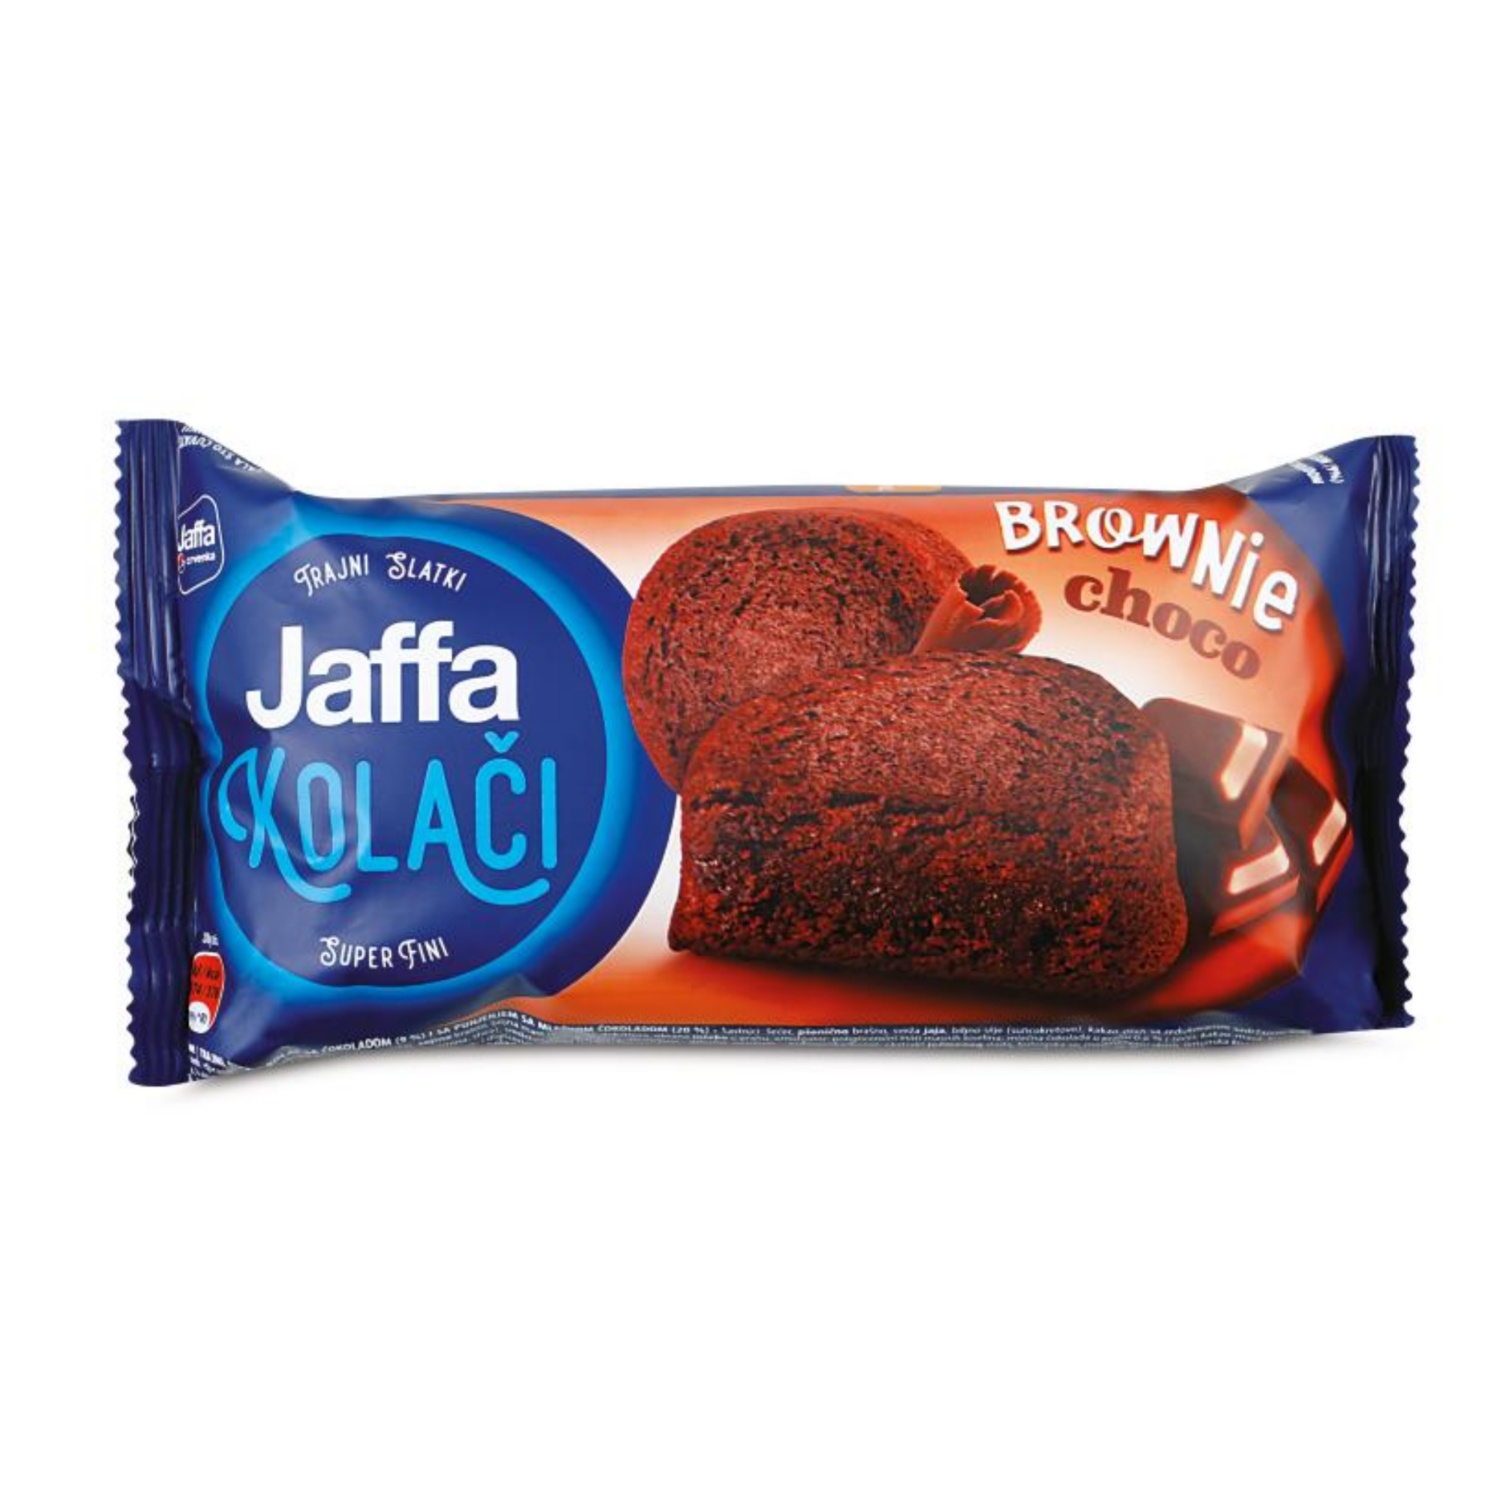 JAFFA Kolač, Brownie choco